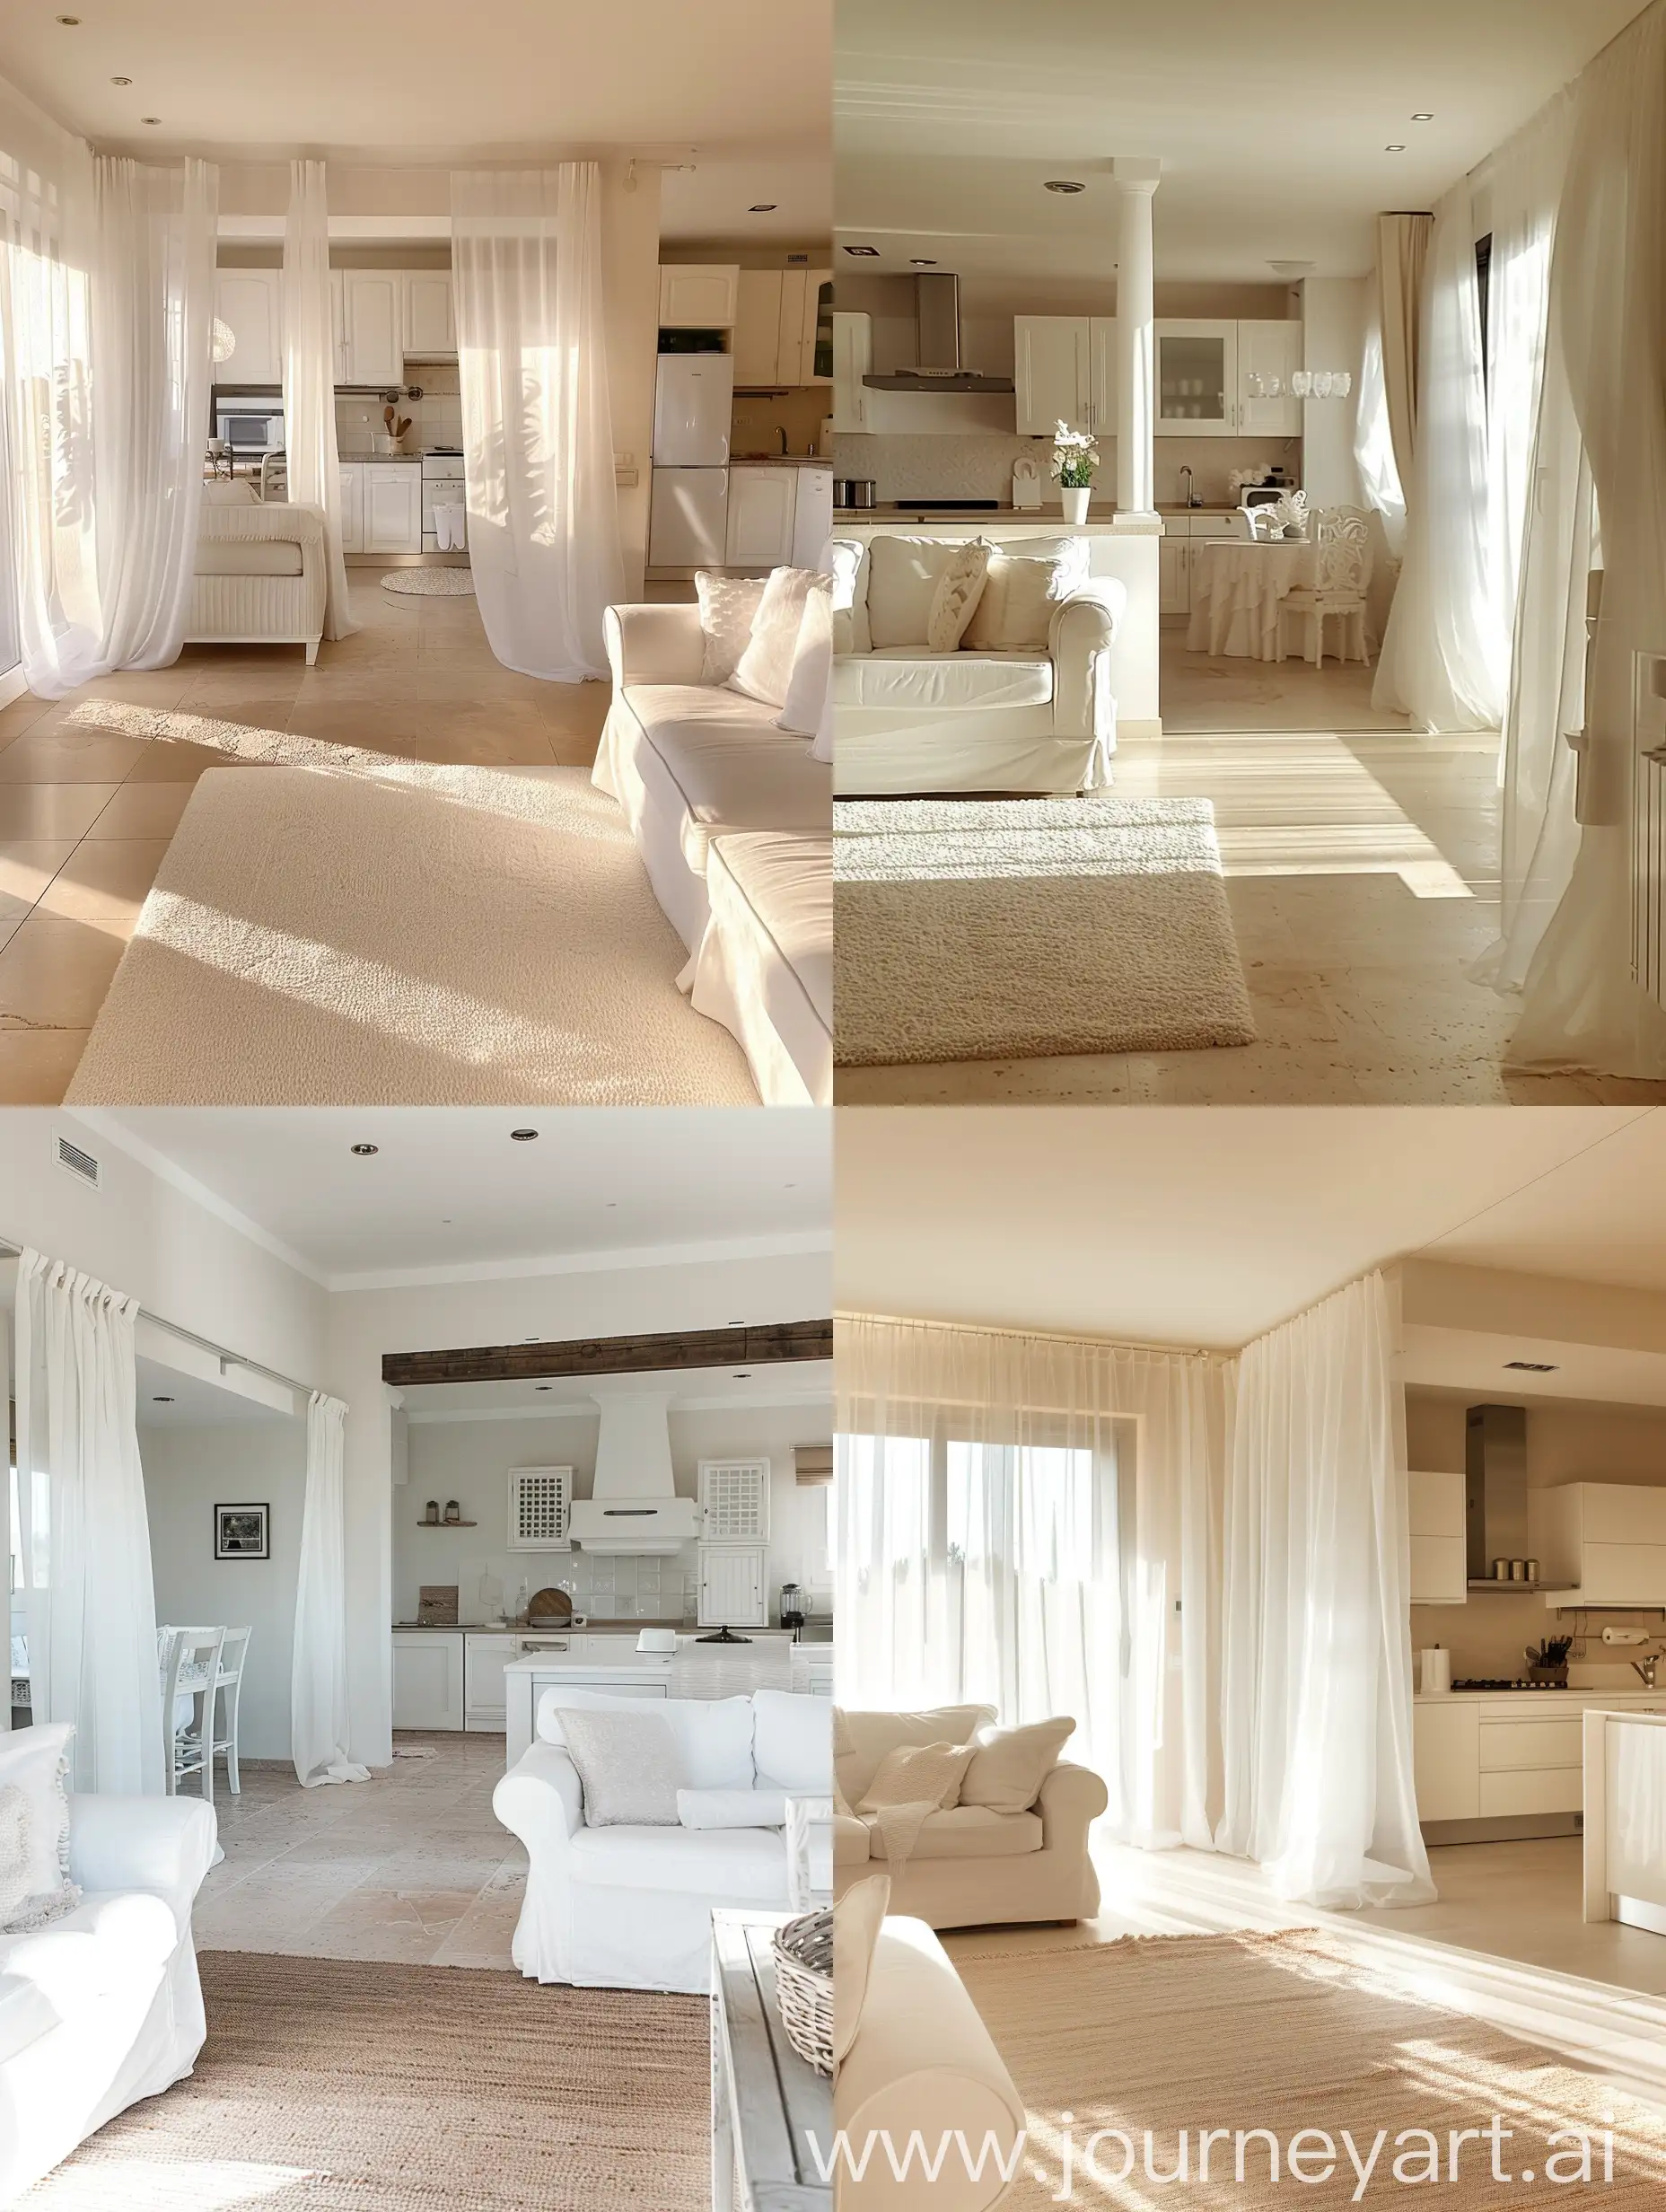 Vista laterale soggiorno con cucina, mobili bianchi, luce del mattino calda, tappeto bianco, pavimento gres beige. Accessori bianchi, tende di organza bianca